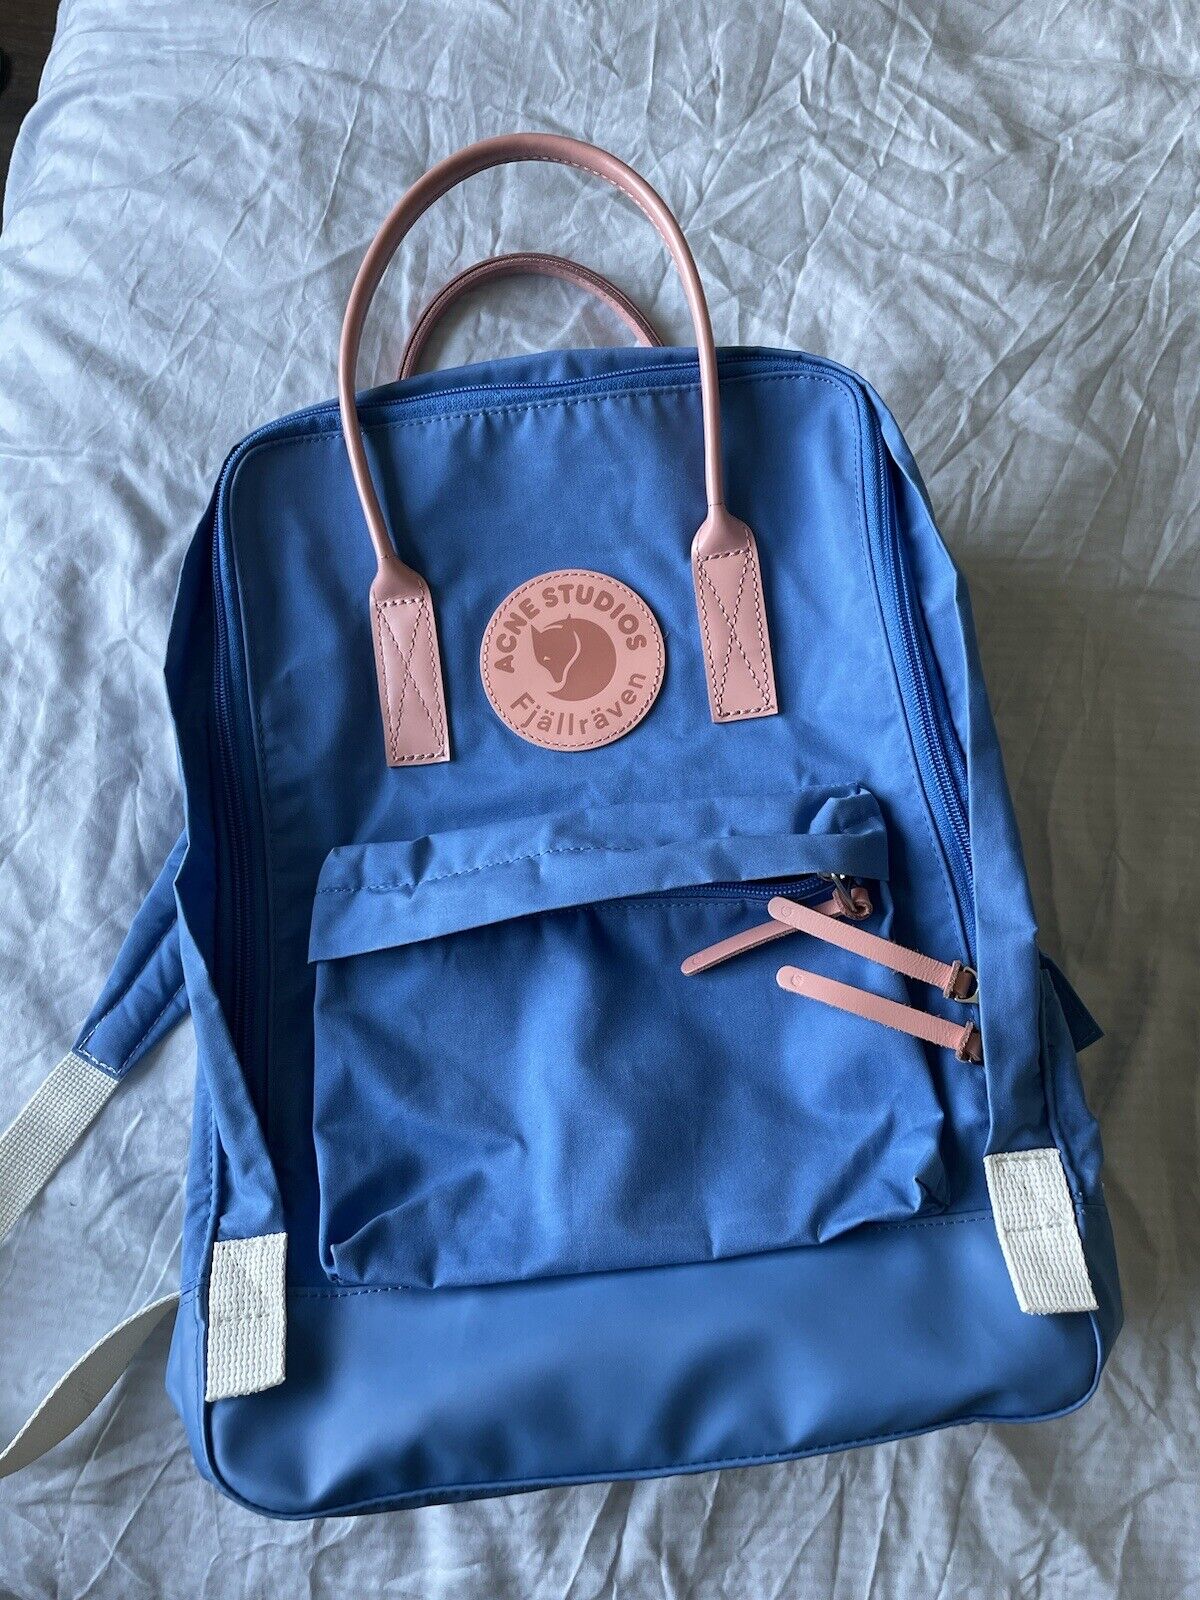 Berg kleding op Modderig namens fjallraven x acne studio backpack | eBay